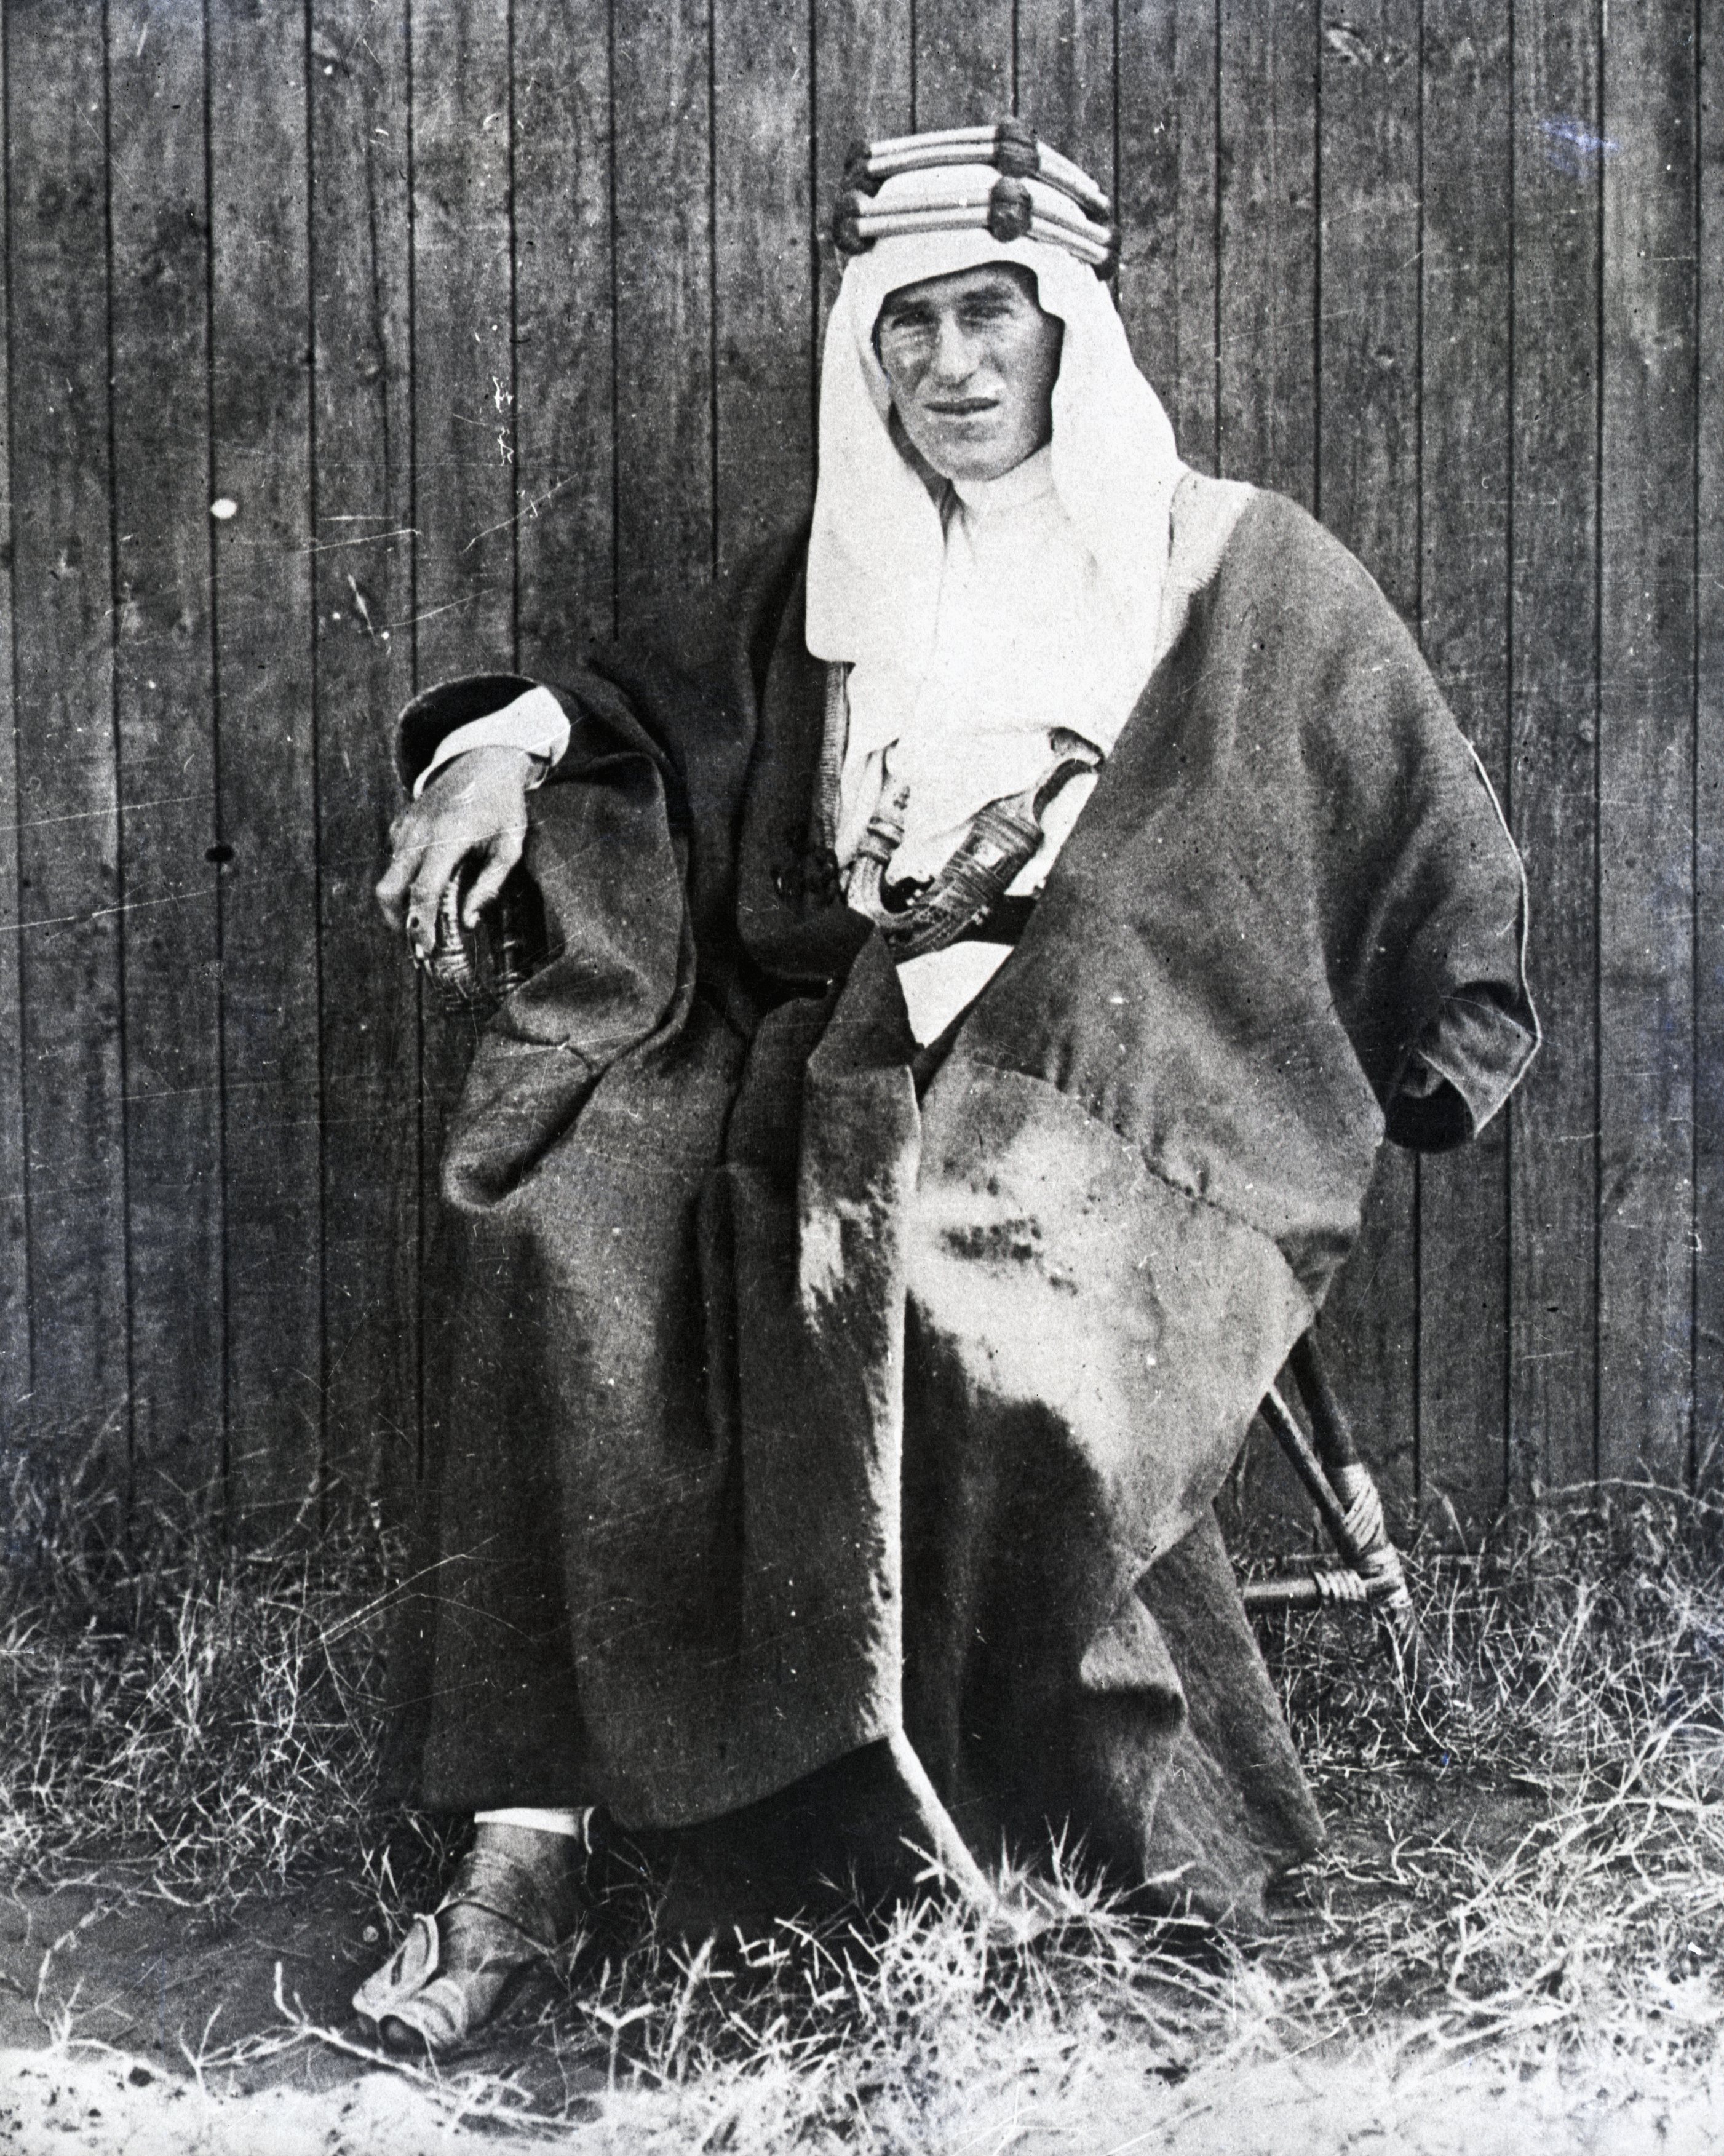 T.E. Lawrence in Arabian Garb